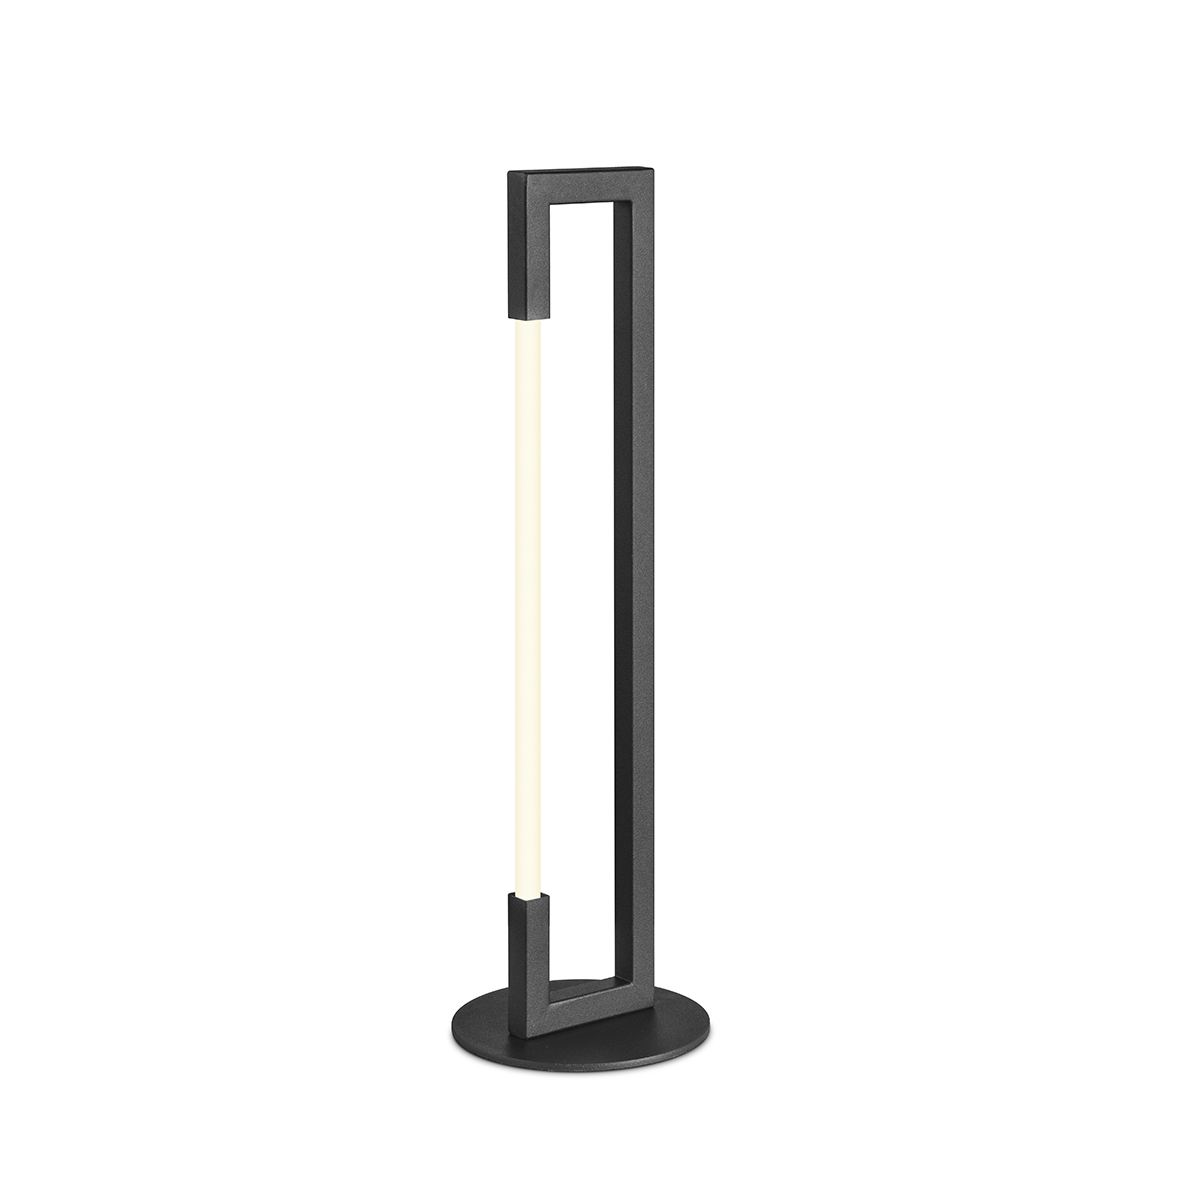 Tangla lighting - TLT7065-18SB - LED Table lamp - metal + LED silicon tube - sand black - vertical square